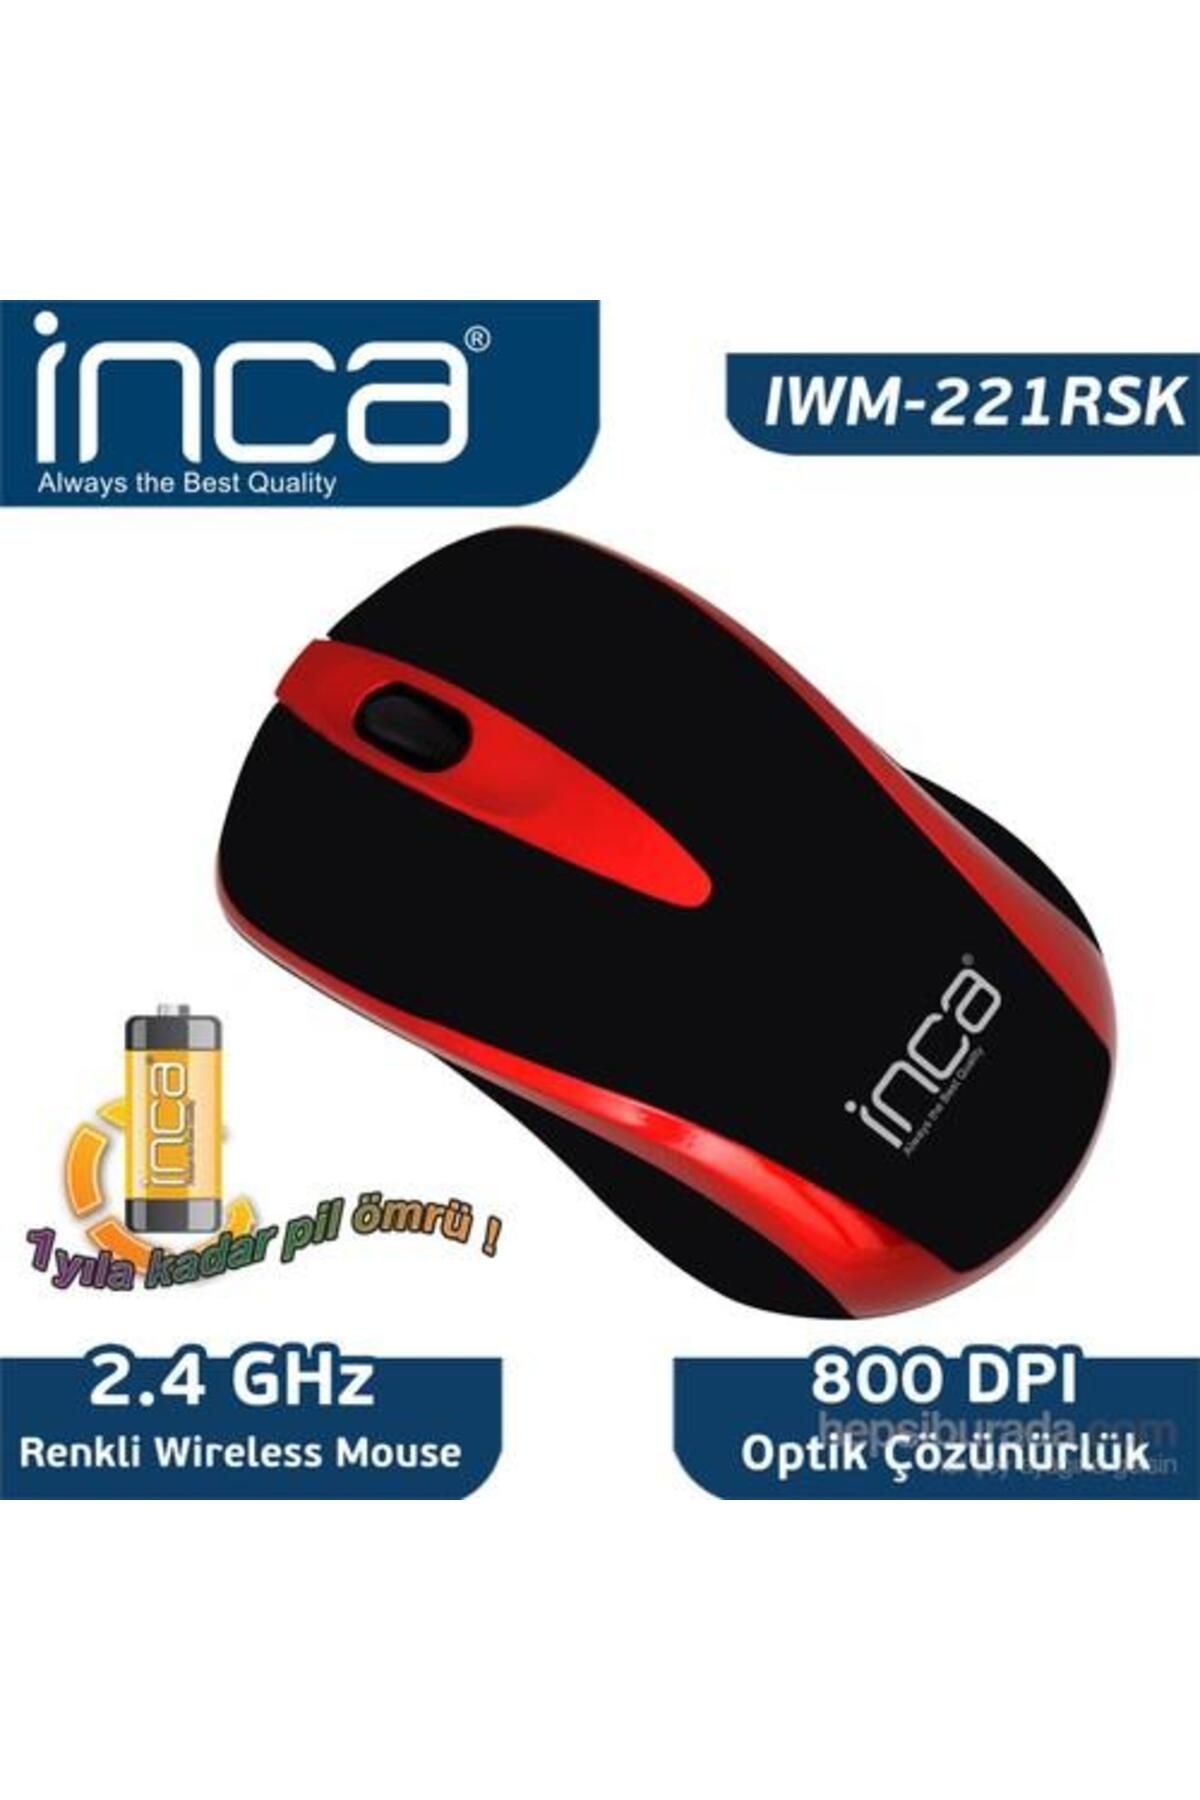 Inca Ivm-221rsk 2.4ghz Wireless Nano Kırmızı Mouse